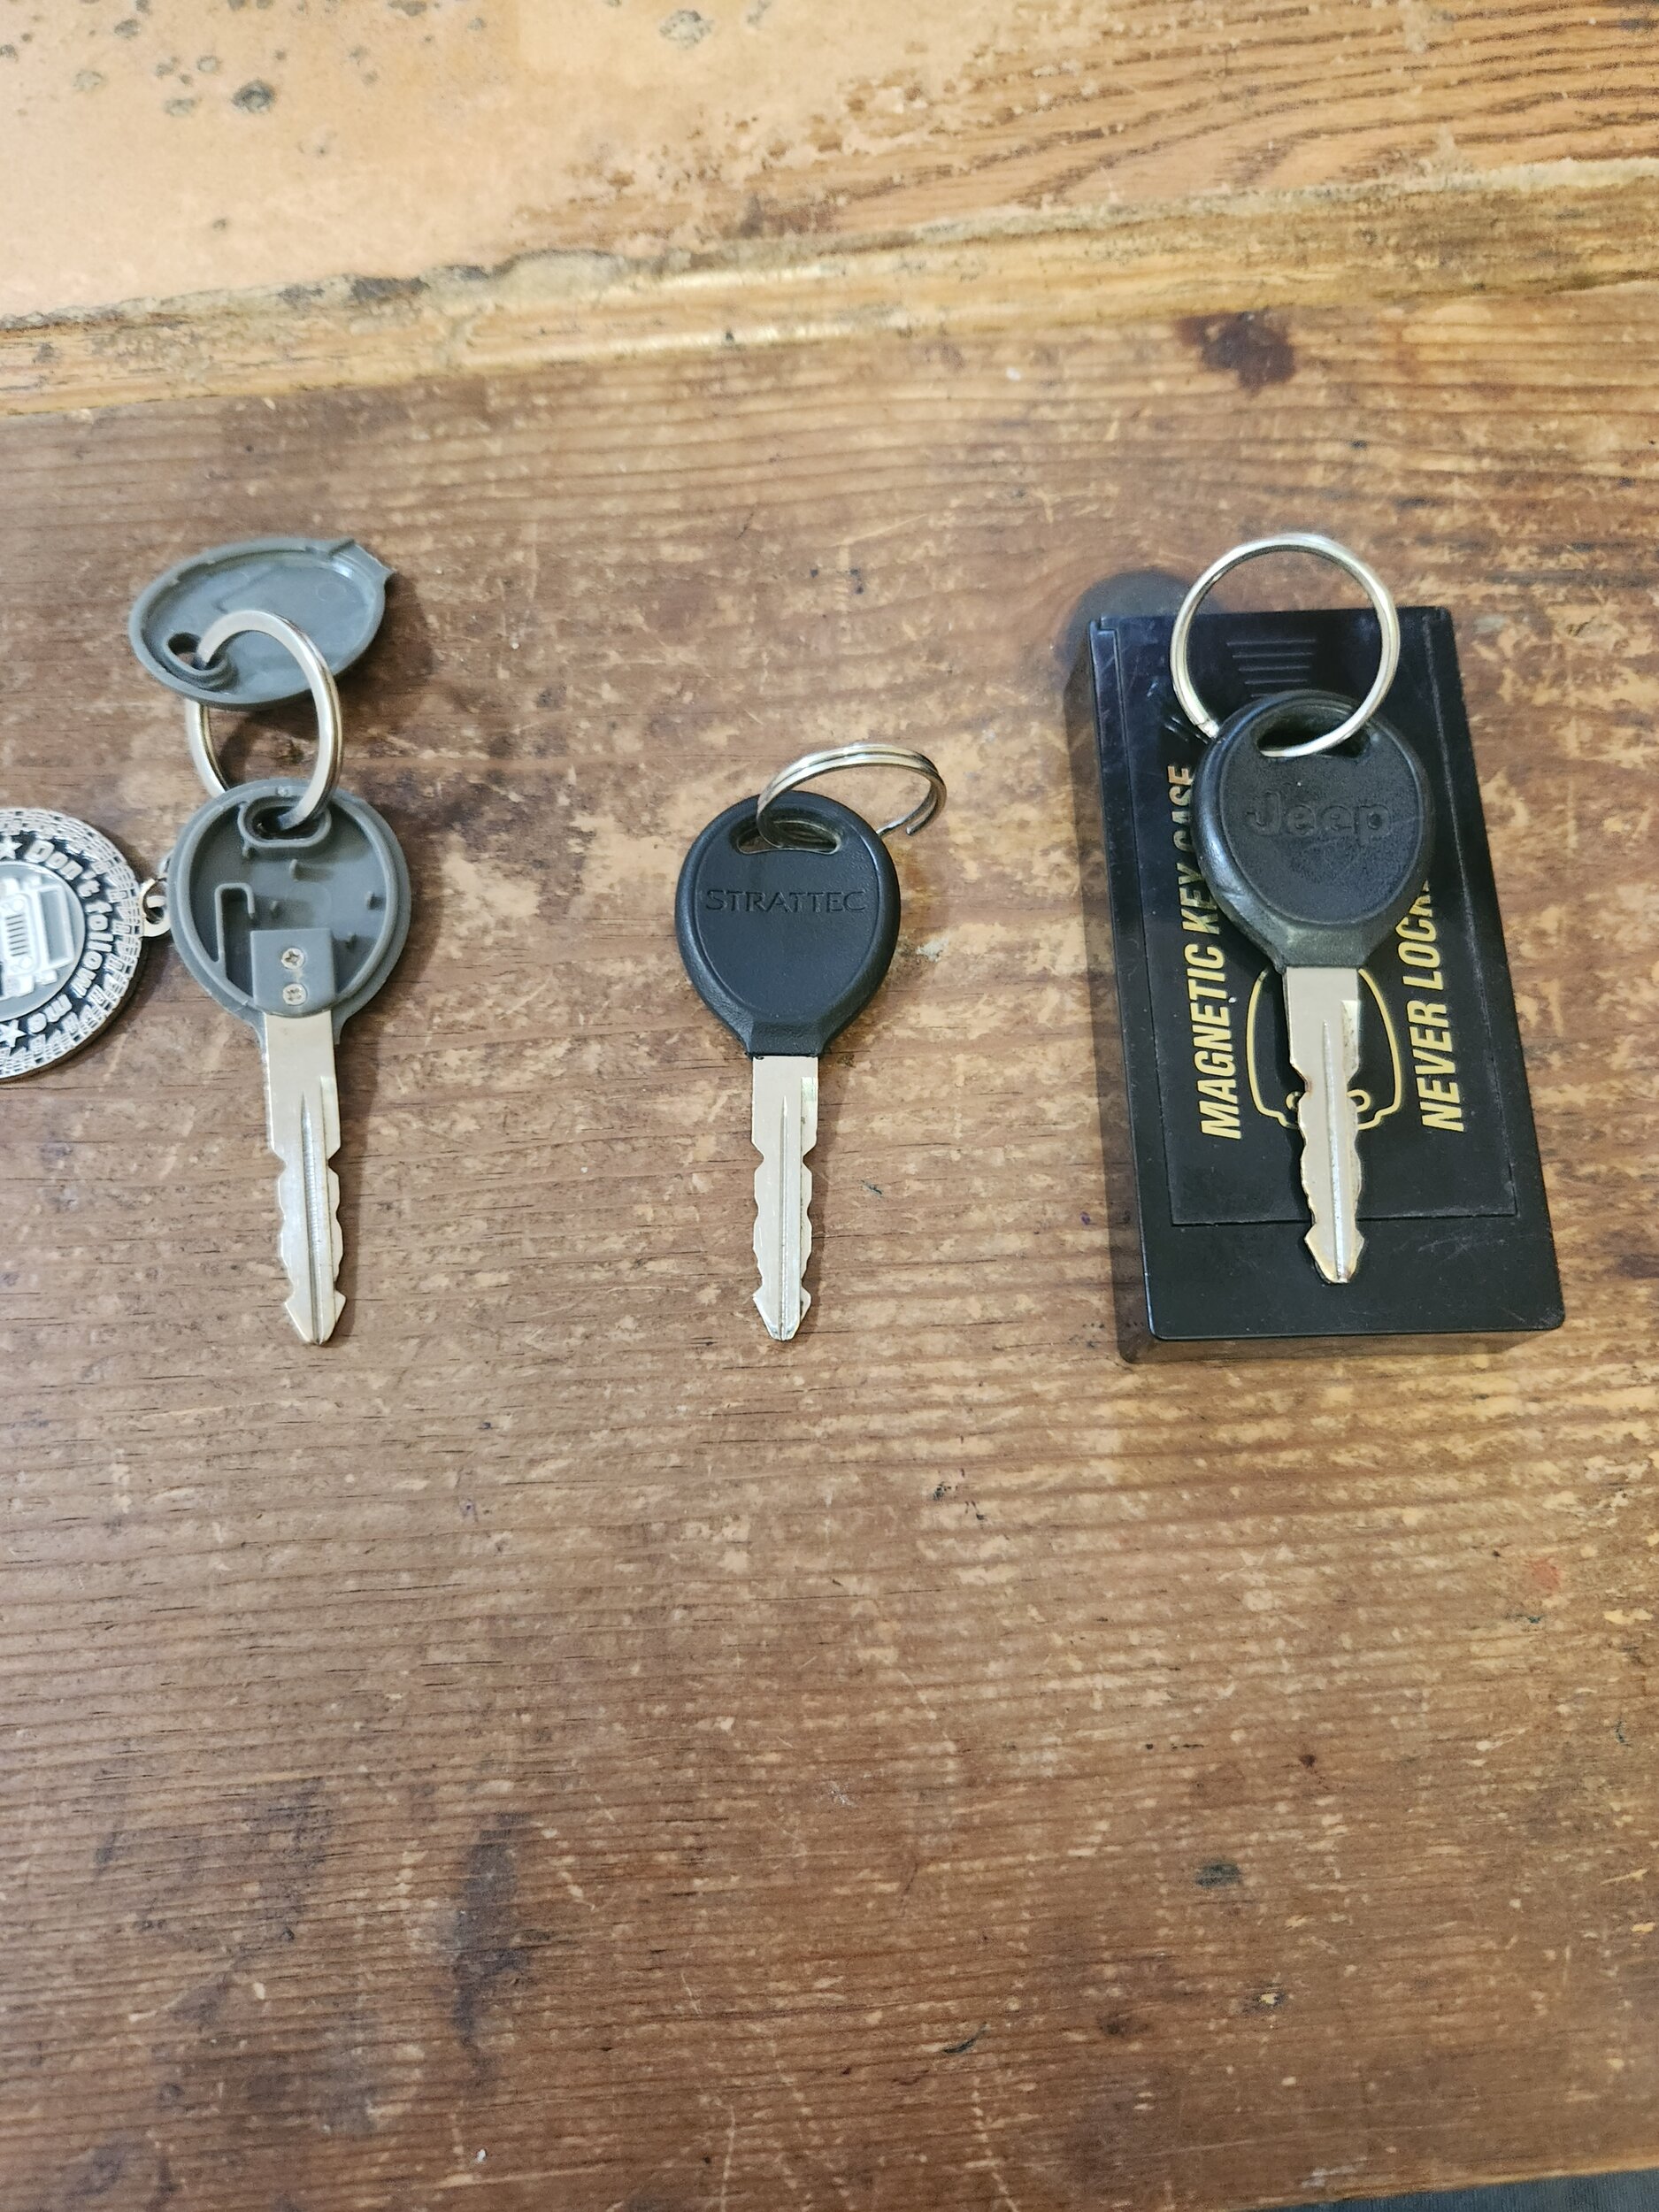 all 3 jeep keys.jpg